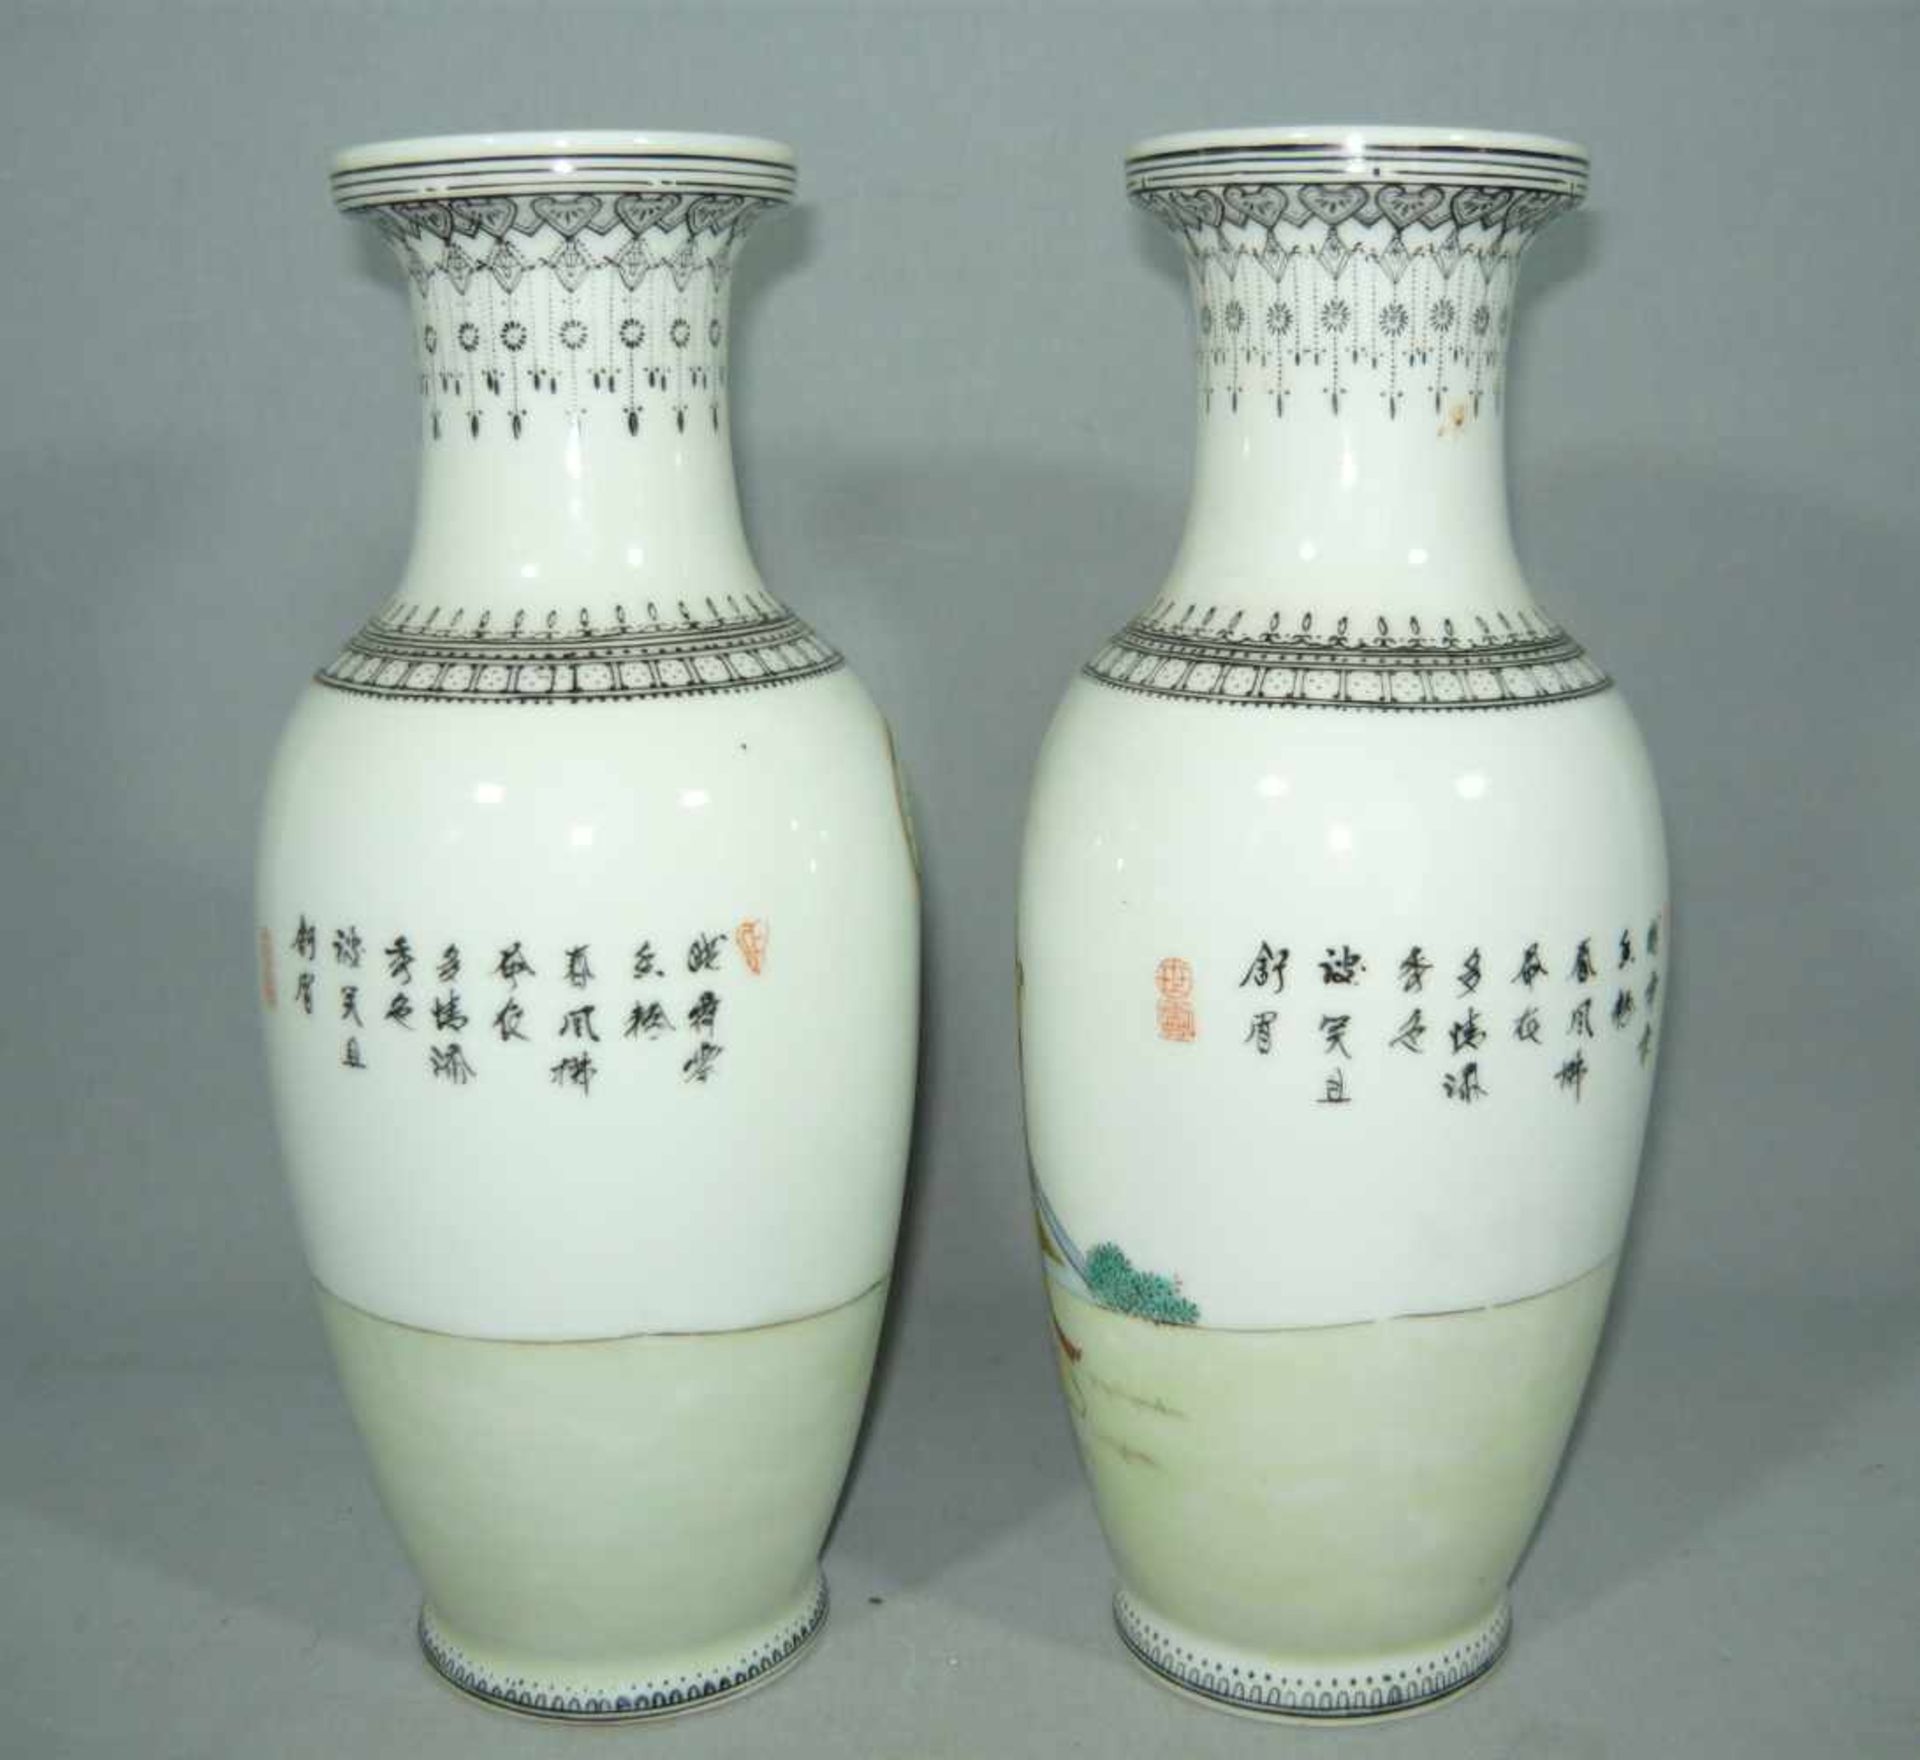 Paar chinesische Vasen. Wohl um 1880. H. je ca. 26 cm.Pair chinese vases. Prob. around 1880. H. each - Bild 2 aus 3